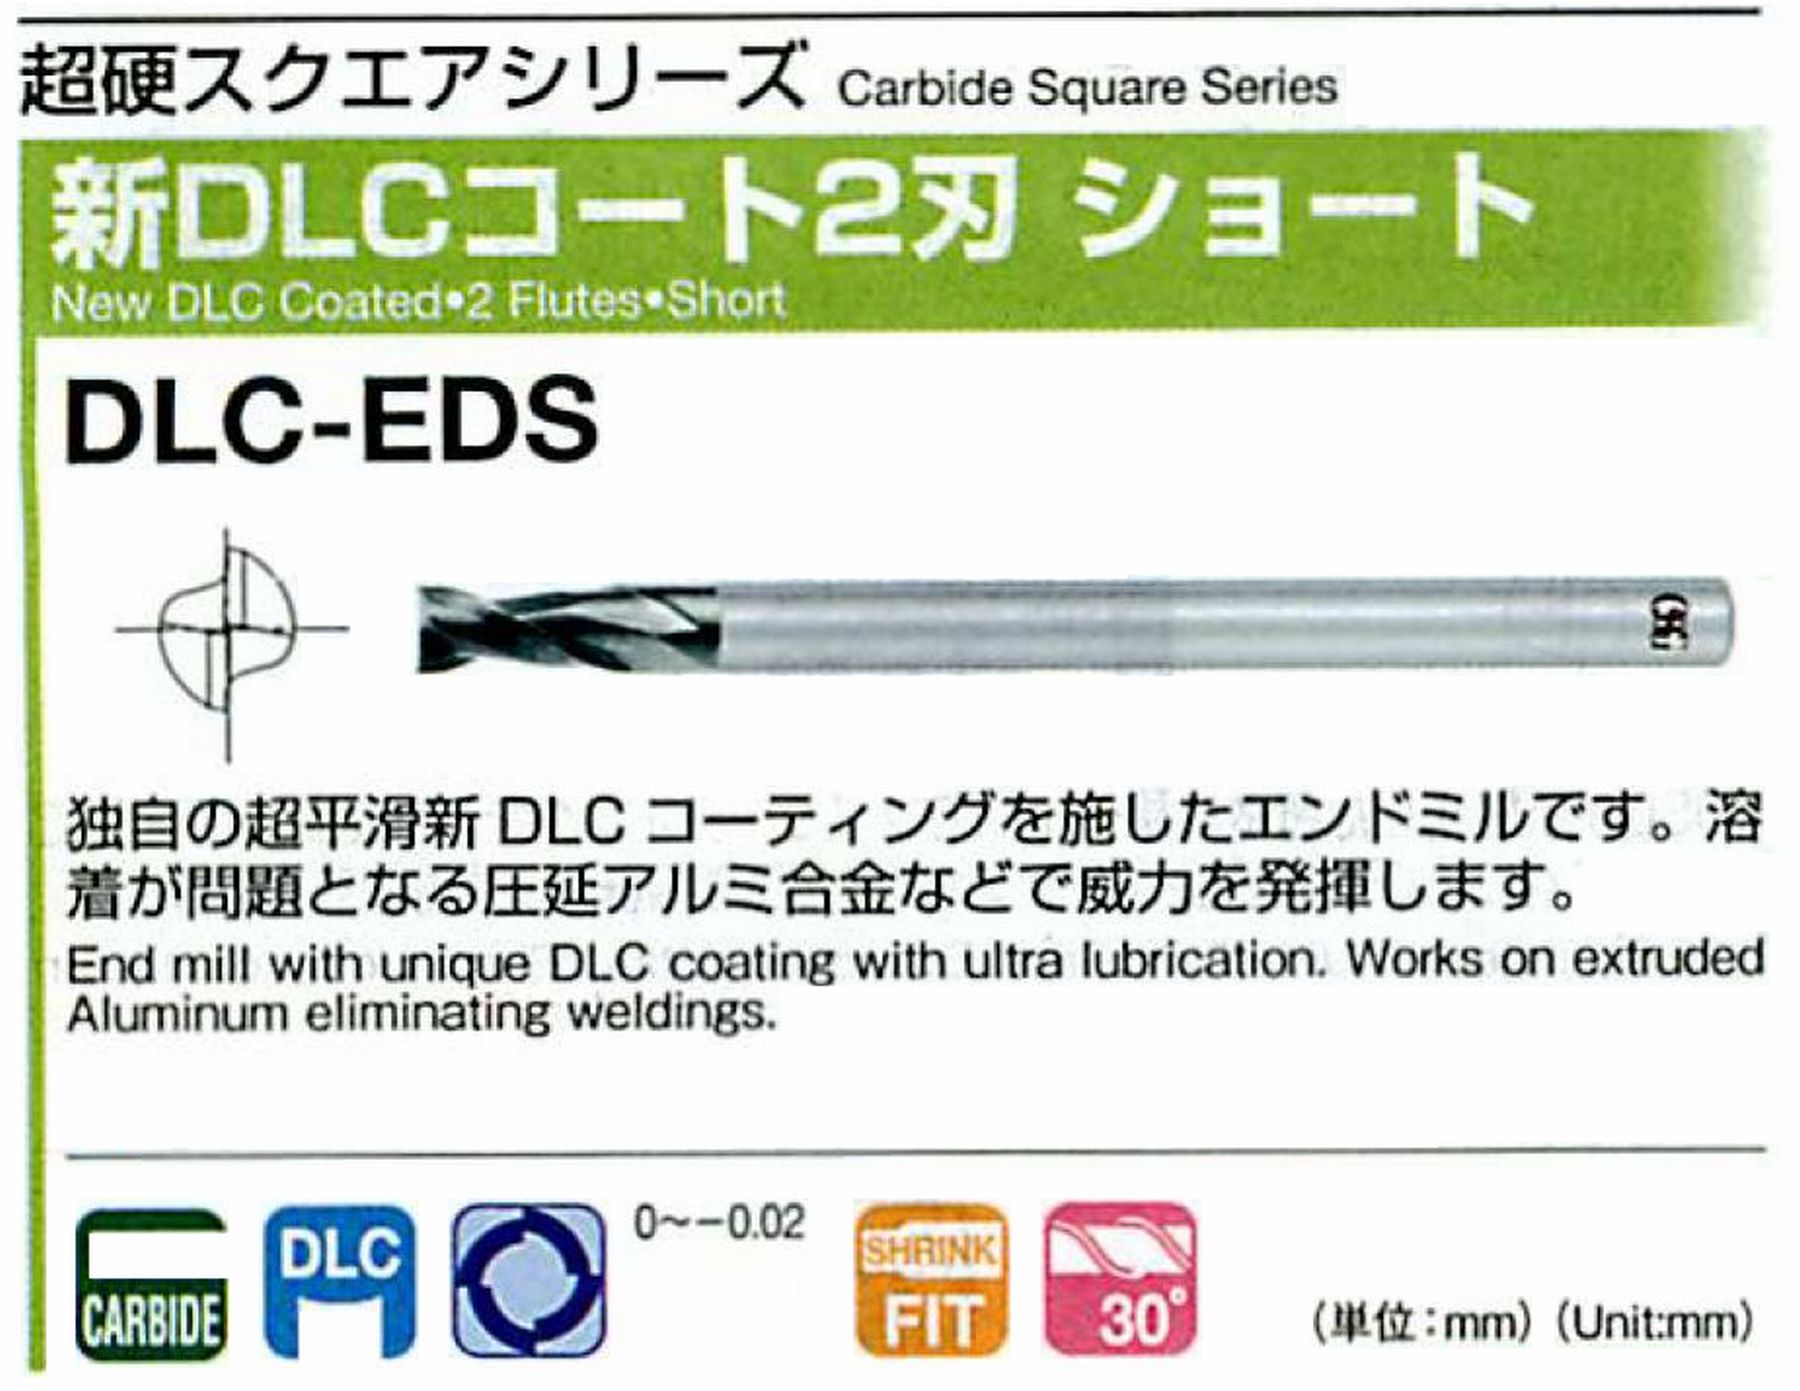 オーエスジー/OSG 新DLCコート 2刃ショート DLC-EDS 外径2 全長40 刃長4 シャンク径4mm